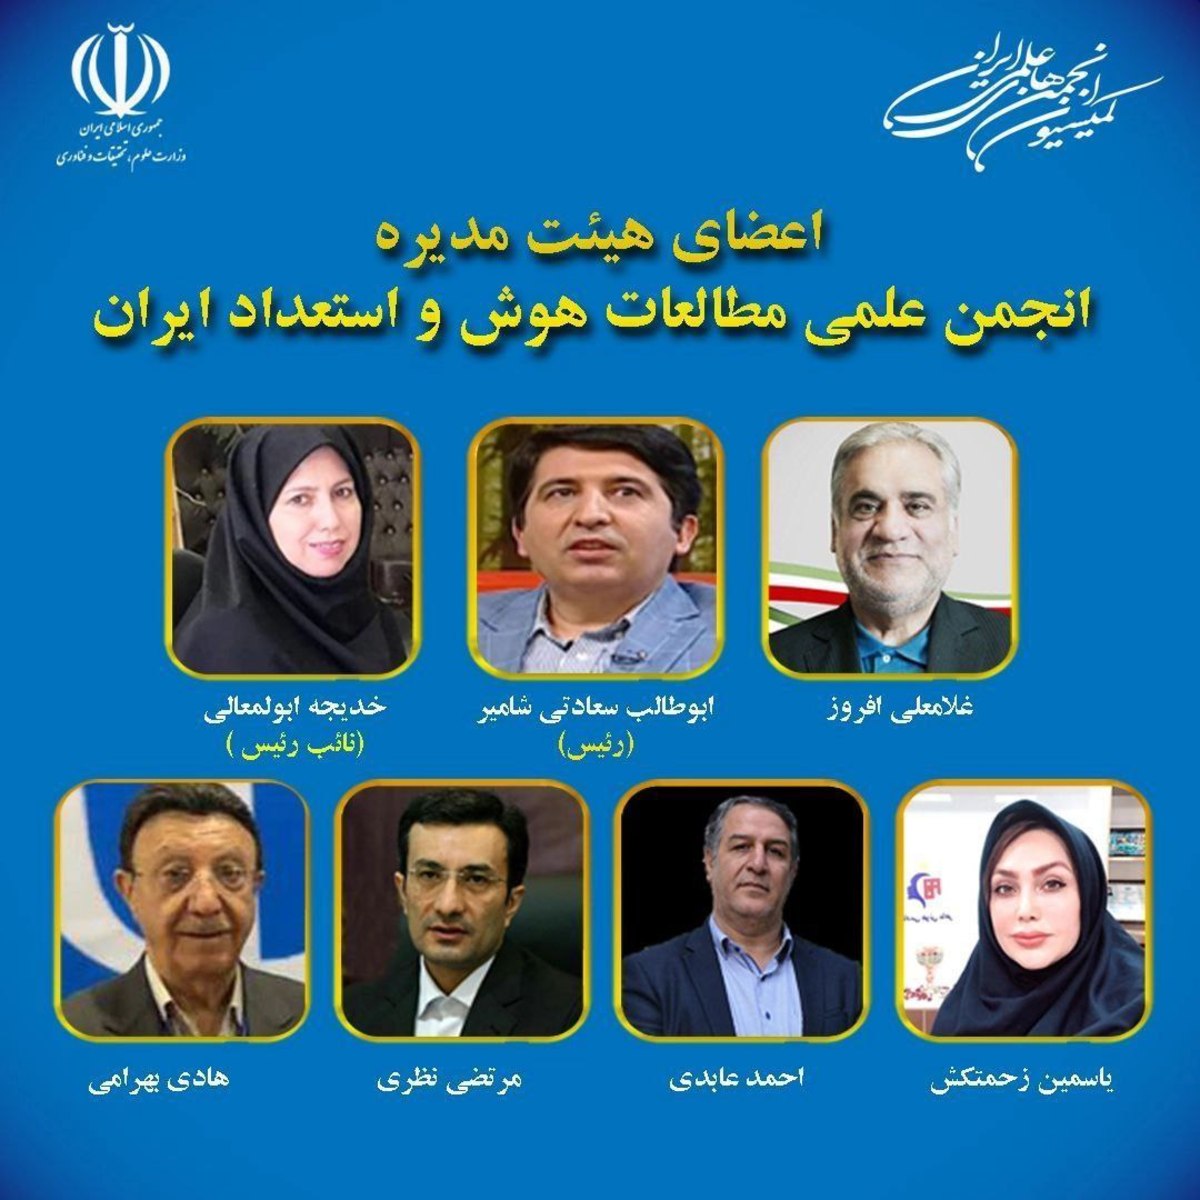 برگزاری مجمع و انتخاب هیات مدیره انجمن علمی مطالعات هوش و استعداد ایران